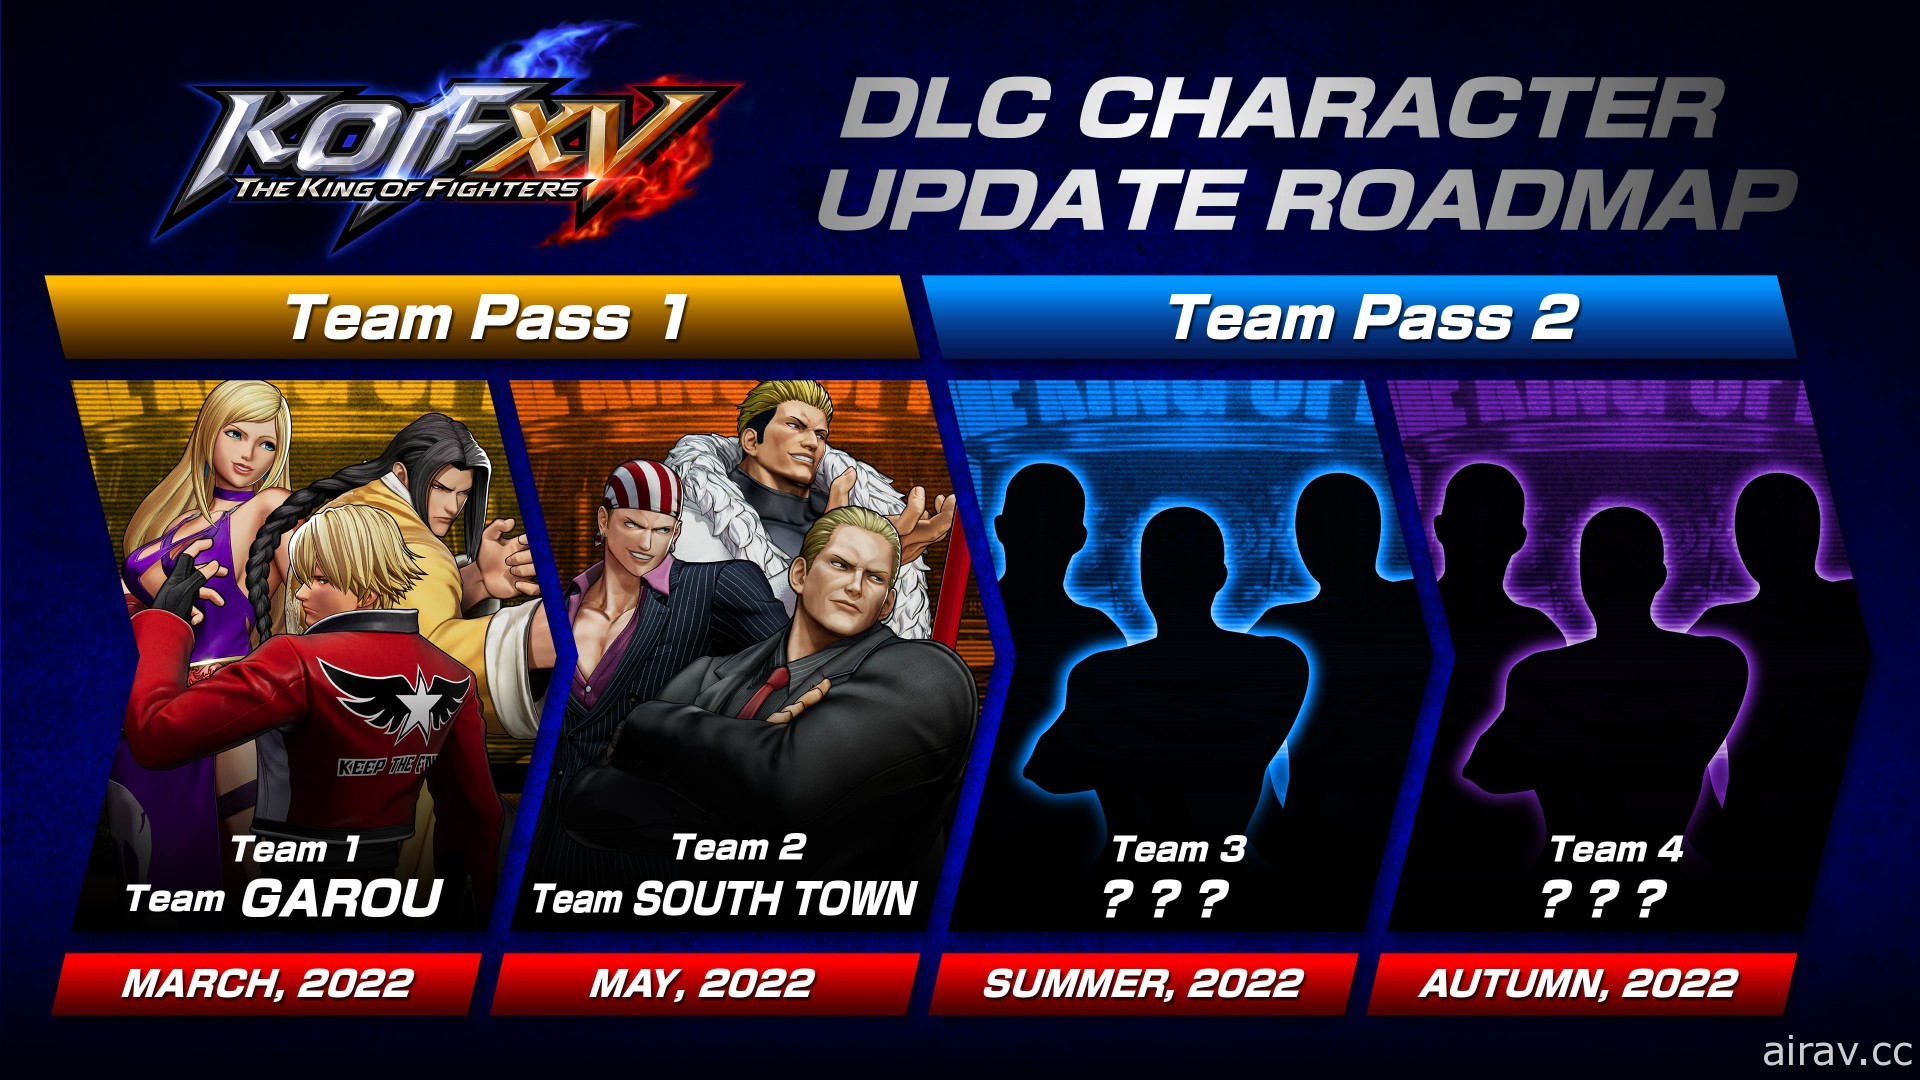 《拳皇 XV》公布首波 DLC 角色包「餓狼狼之印記隊」「南鎮隊」